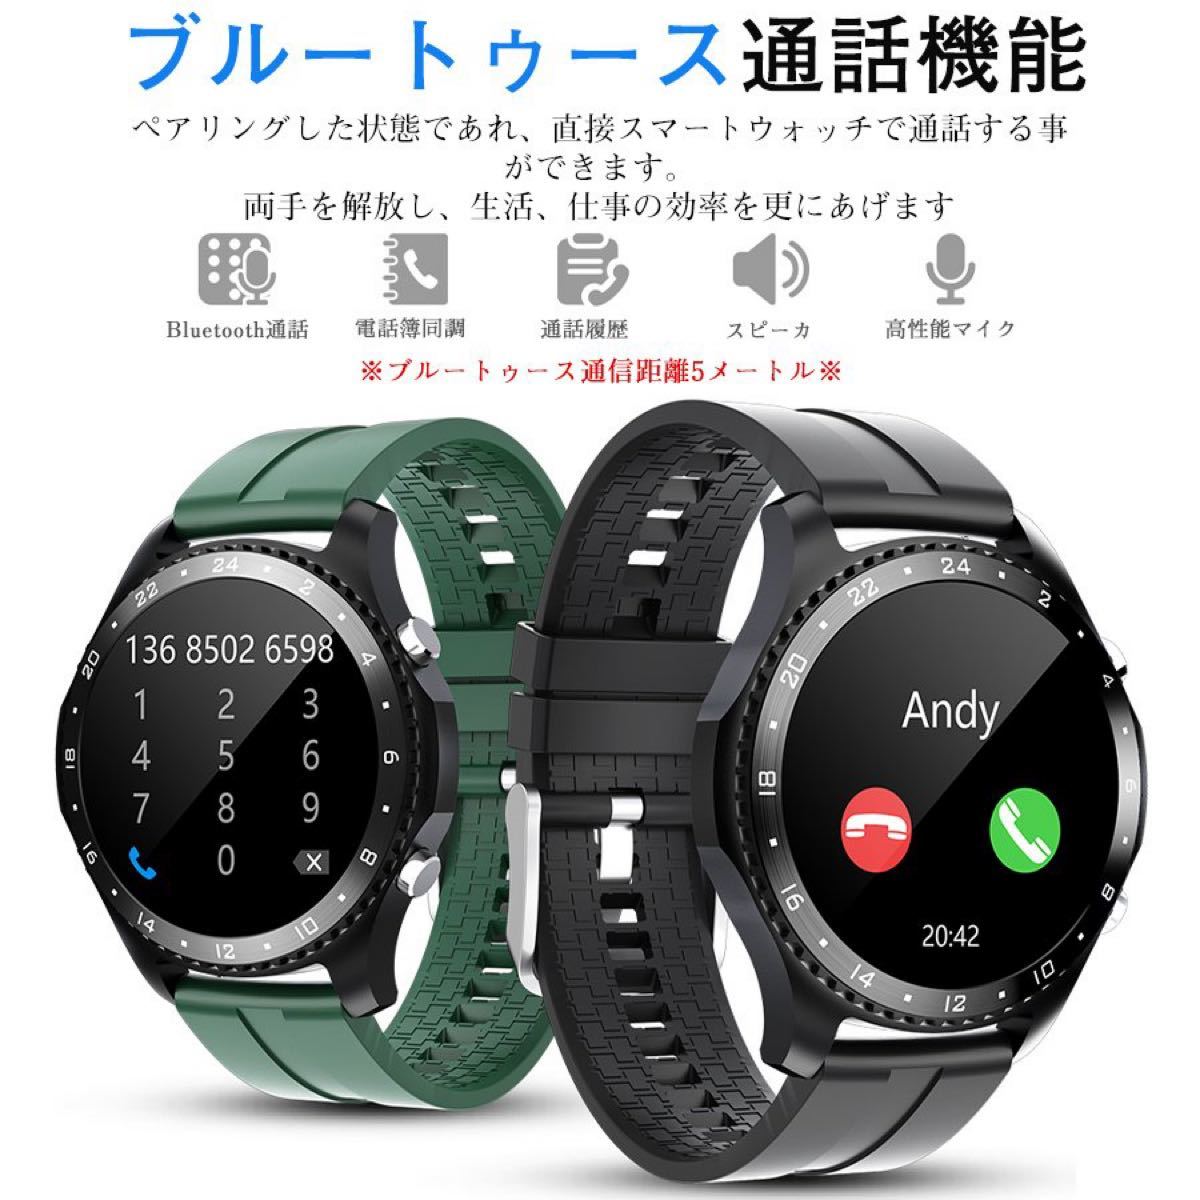 スマートウォッチ ブルートゥース通話機能 血中酸素 健康管理 Bluetooth 腕時計